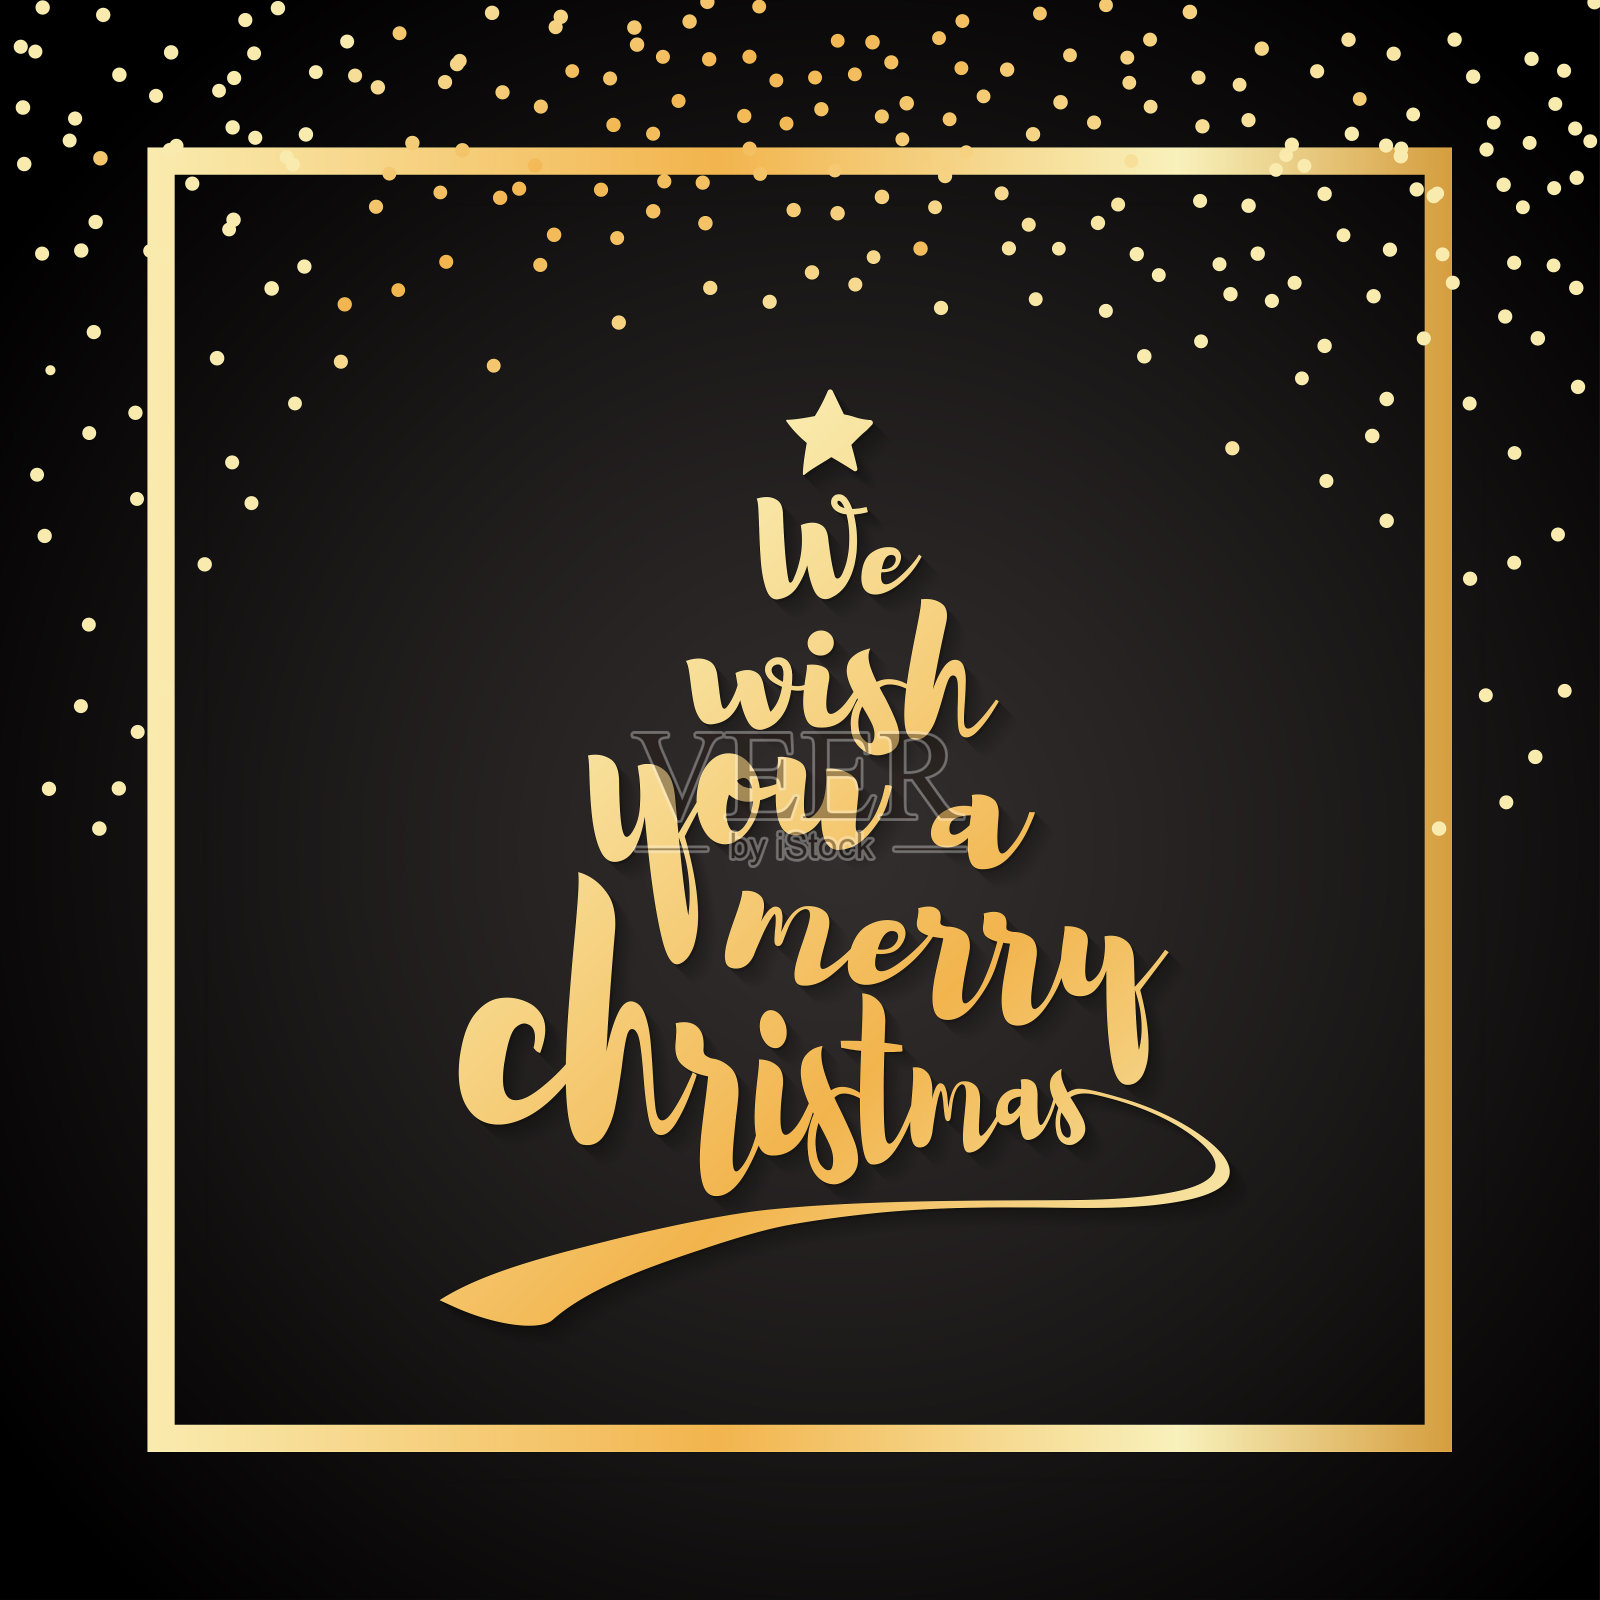 我们祝你圣诞快乐。书法文字做成圣诞树的形状，上面有一颗星星。向量艺术与黄金框架。插画图片素材